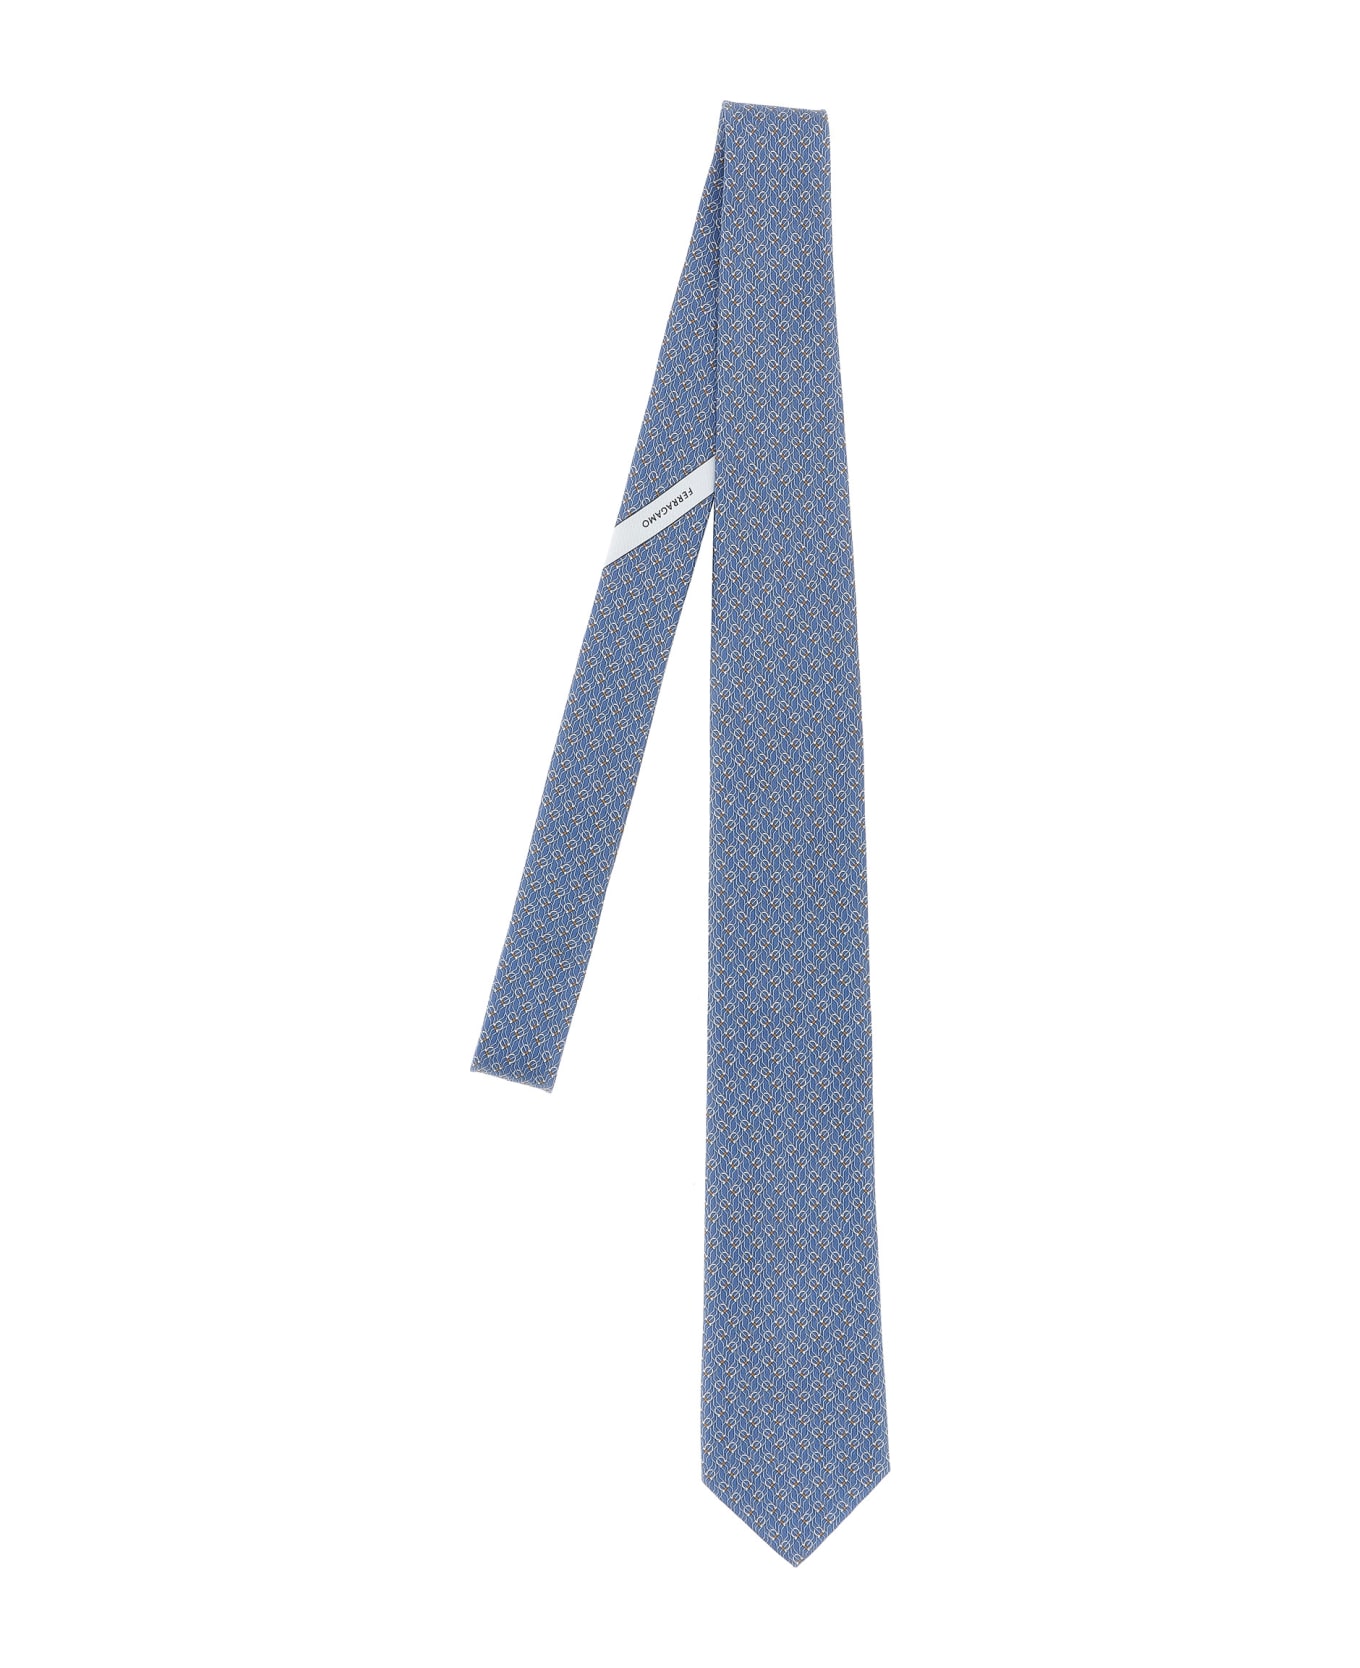 Ferragamo 'tetris' Tie - Gnawed Blue ネクタイ